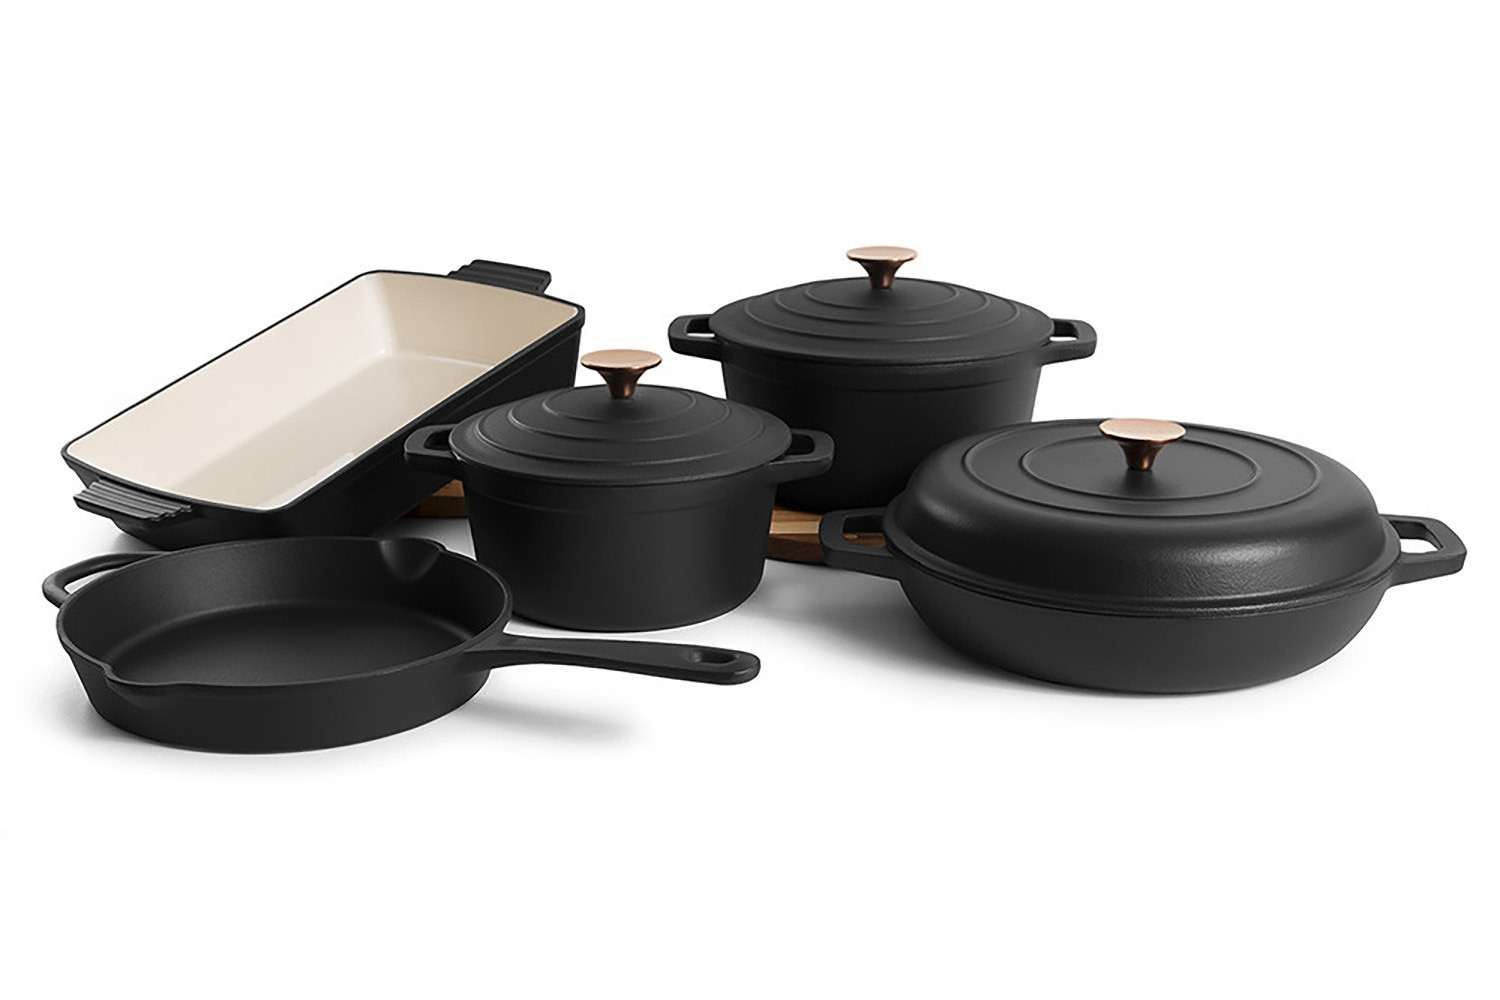 https://www.cielo.co.za/123800-large_default/nouvelle-cast-iron-8-piece-cookware-set-matt-black.jpg